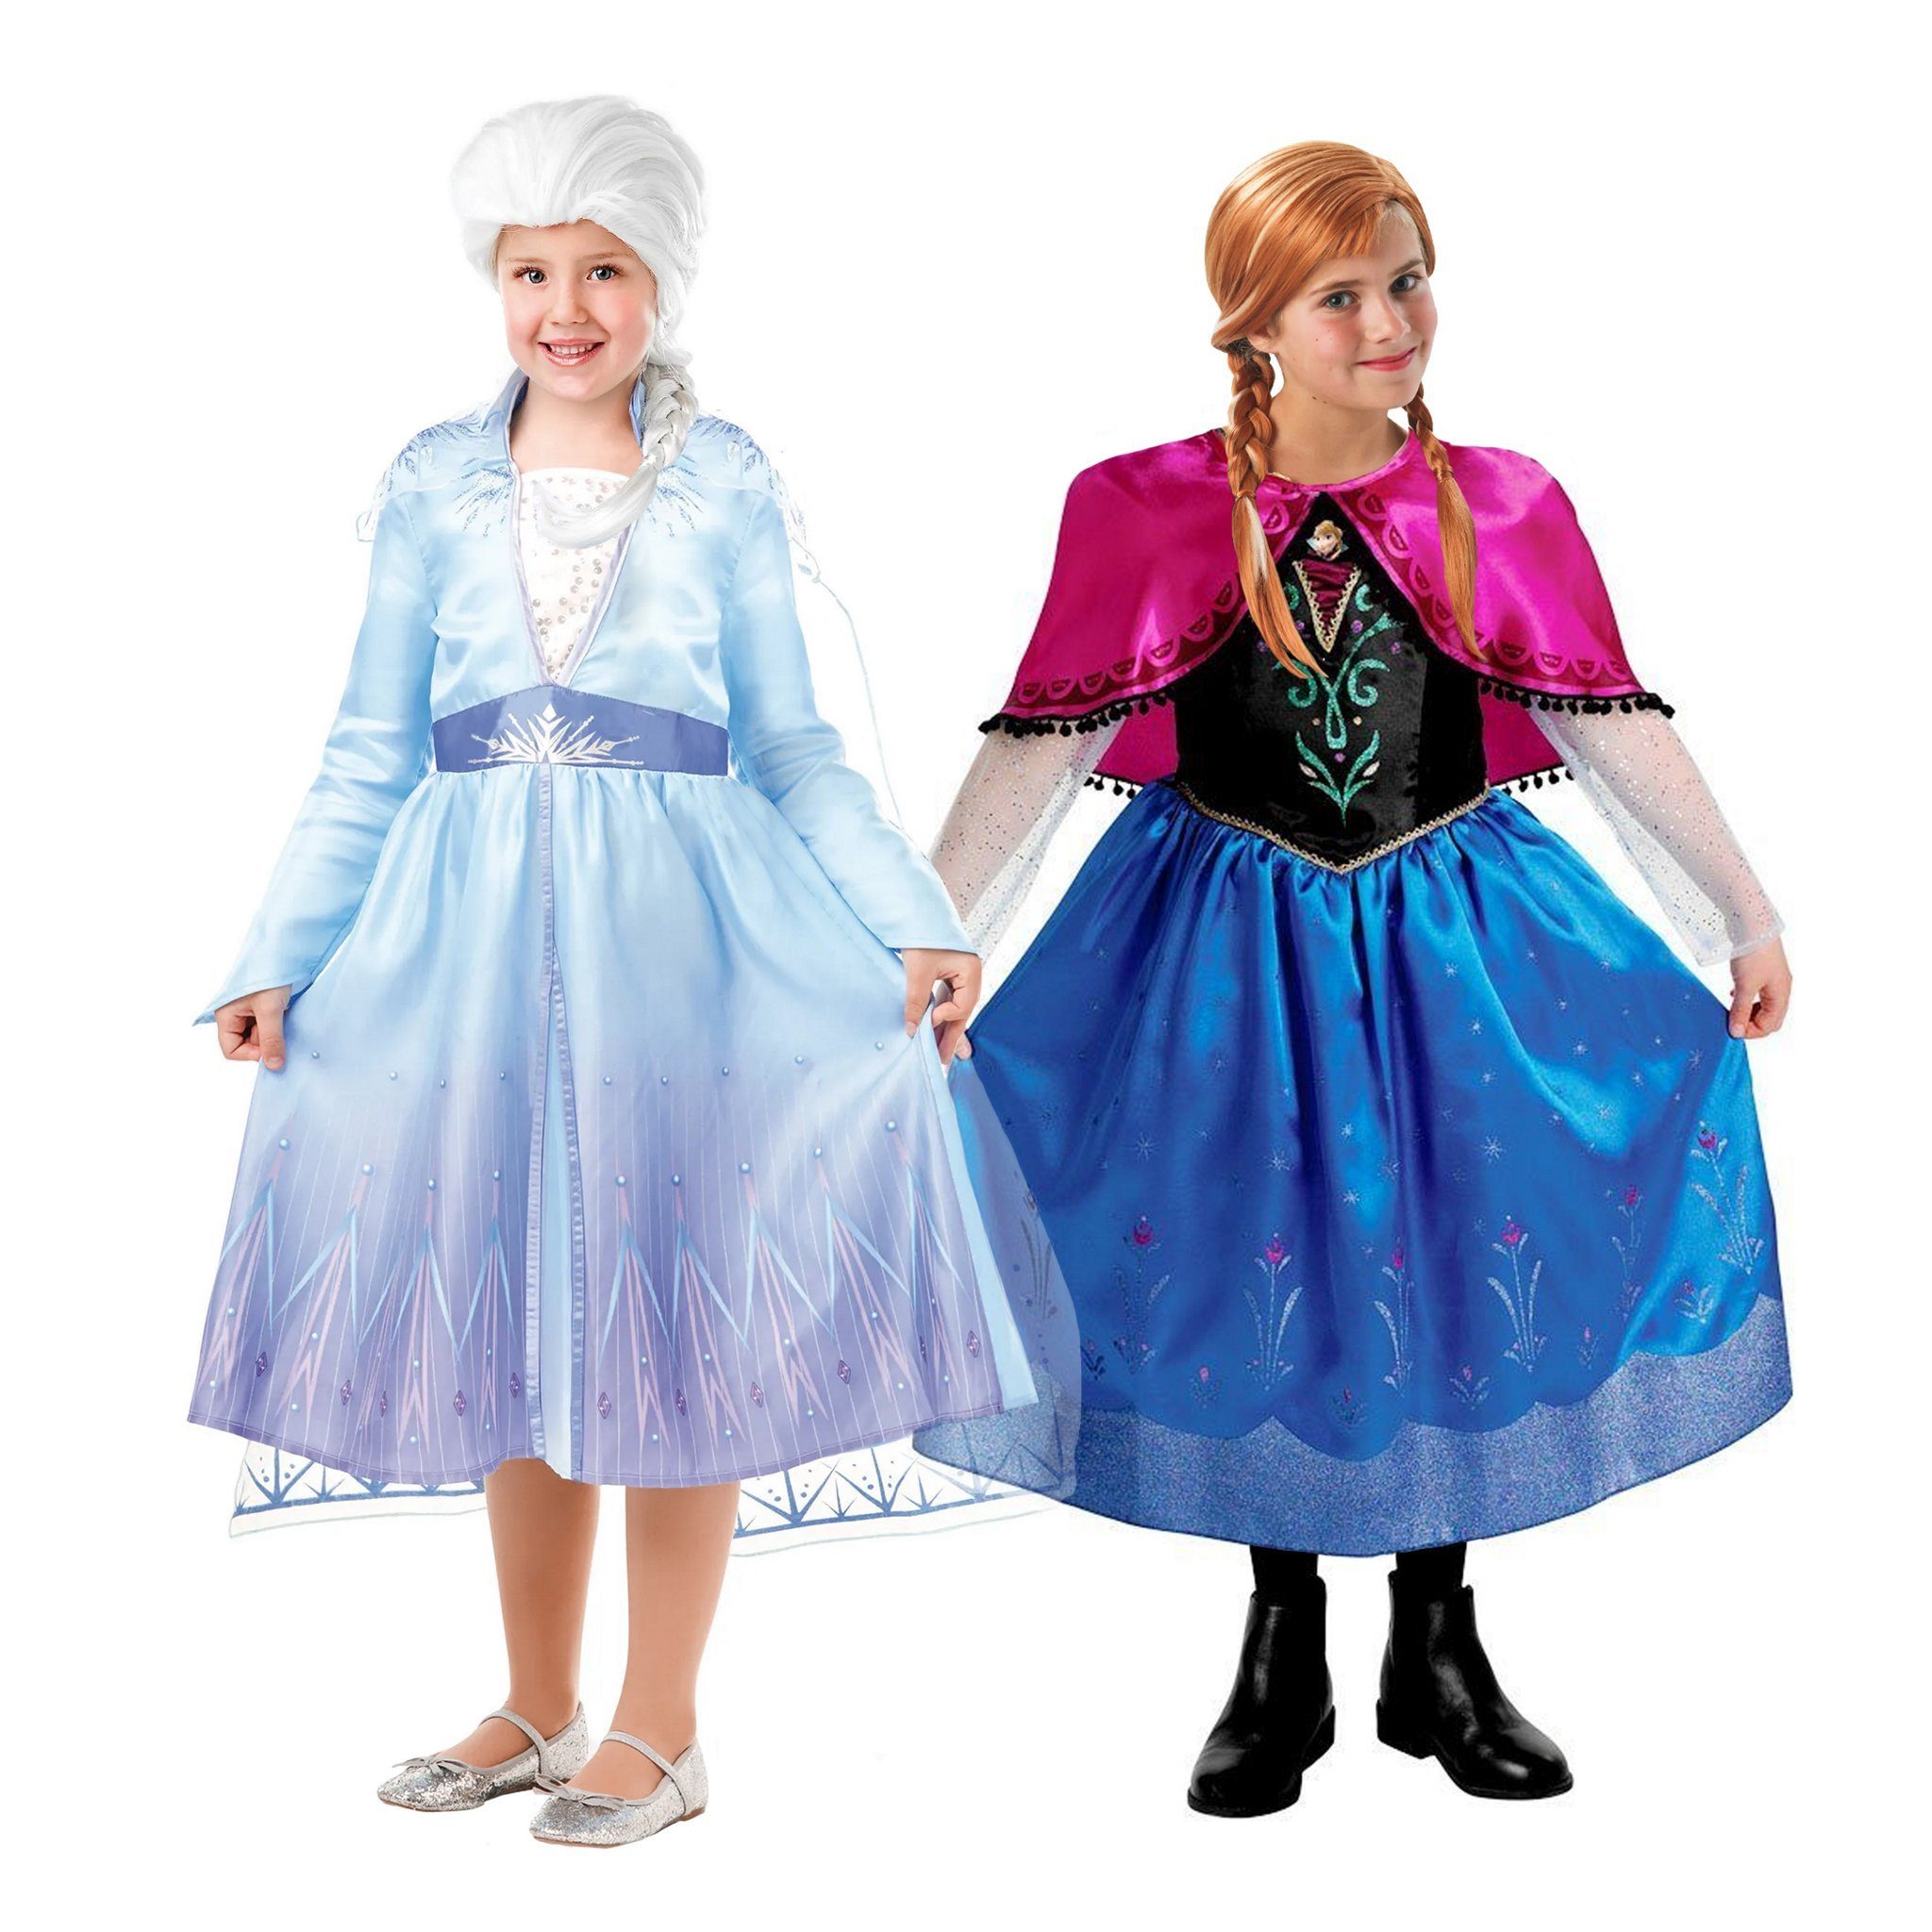 Rubie´s Kostüm Die Eiskönigin Anna und Elsa Kostümbox mit 2 Perüc,  Bezaubernde Anna und Elsa Die Eiskönigin Verkleidungskiste mit zwei  Kostümen und zwei Perücken aus den Disney Frozen Filmen. Verkleidet euch,  verwandelt